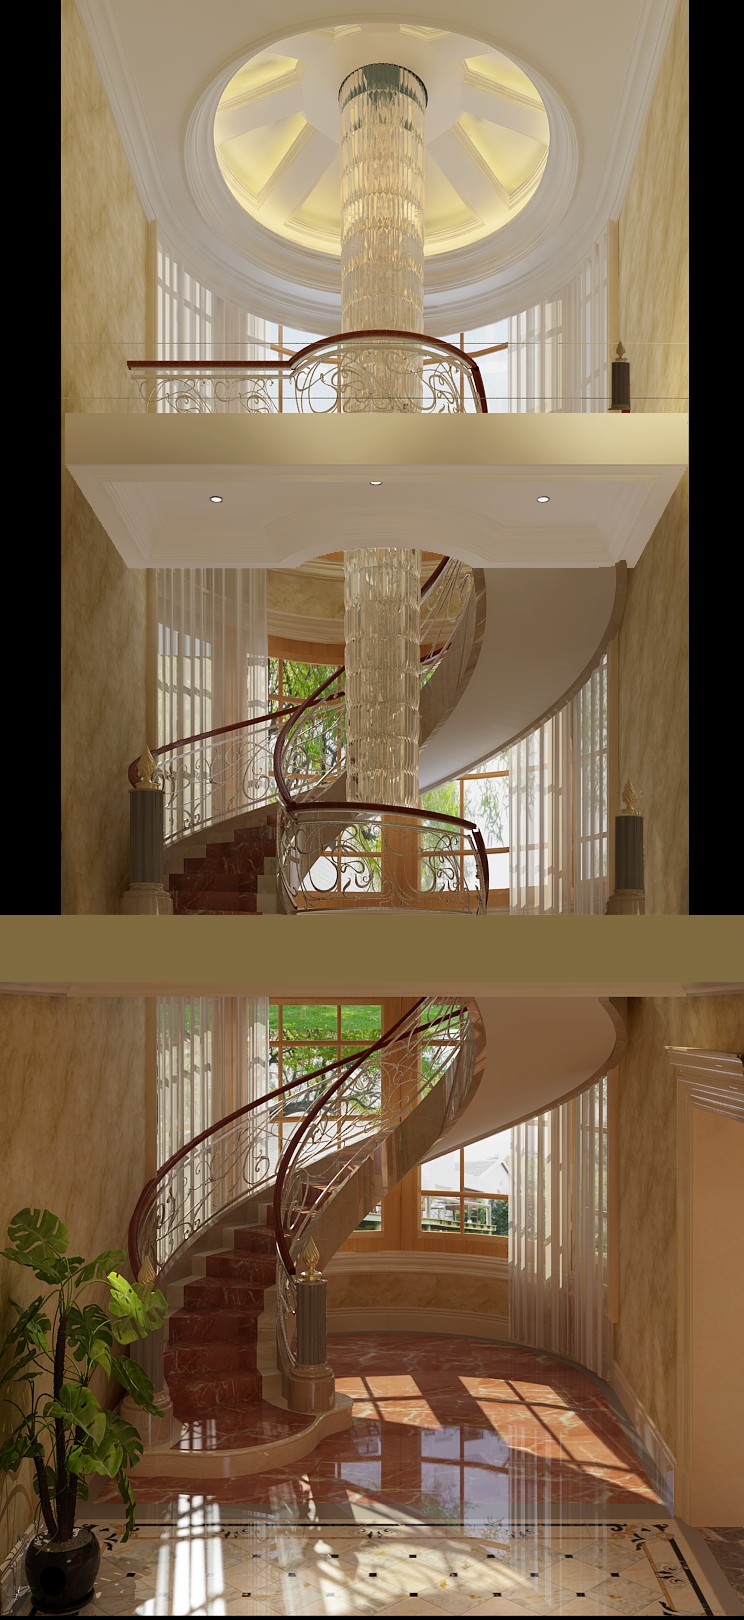 独栋 别墅 五居 楼梯图片来自高度国际装饰宋增会在蓝岸丽舍603平米欧式新古典的分享